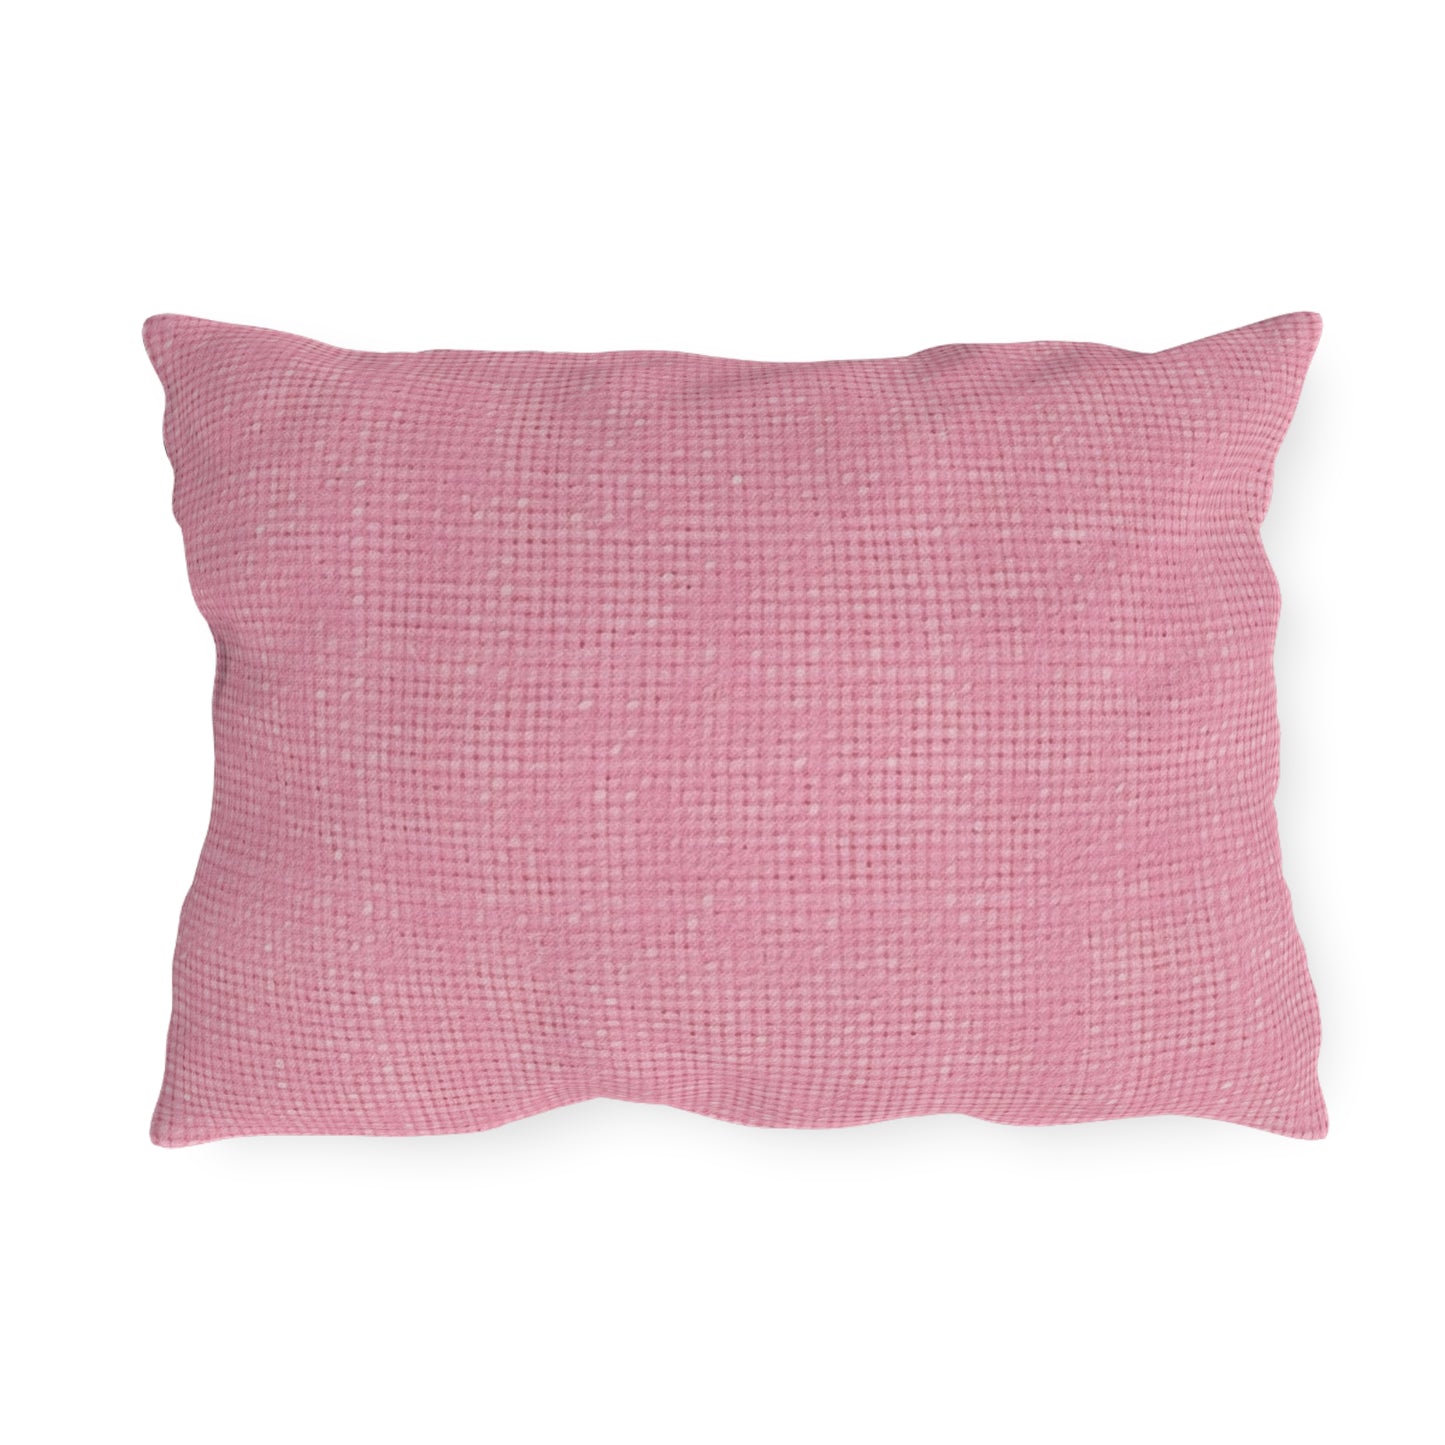 Pastel Rose Pink: Denim-Inspired, Refreshing Fabric Design - Outdoor Pillows